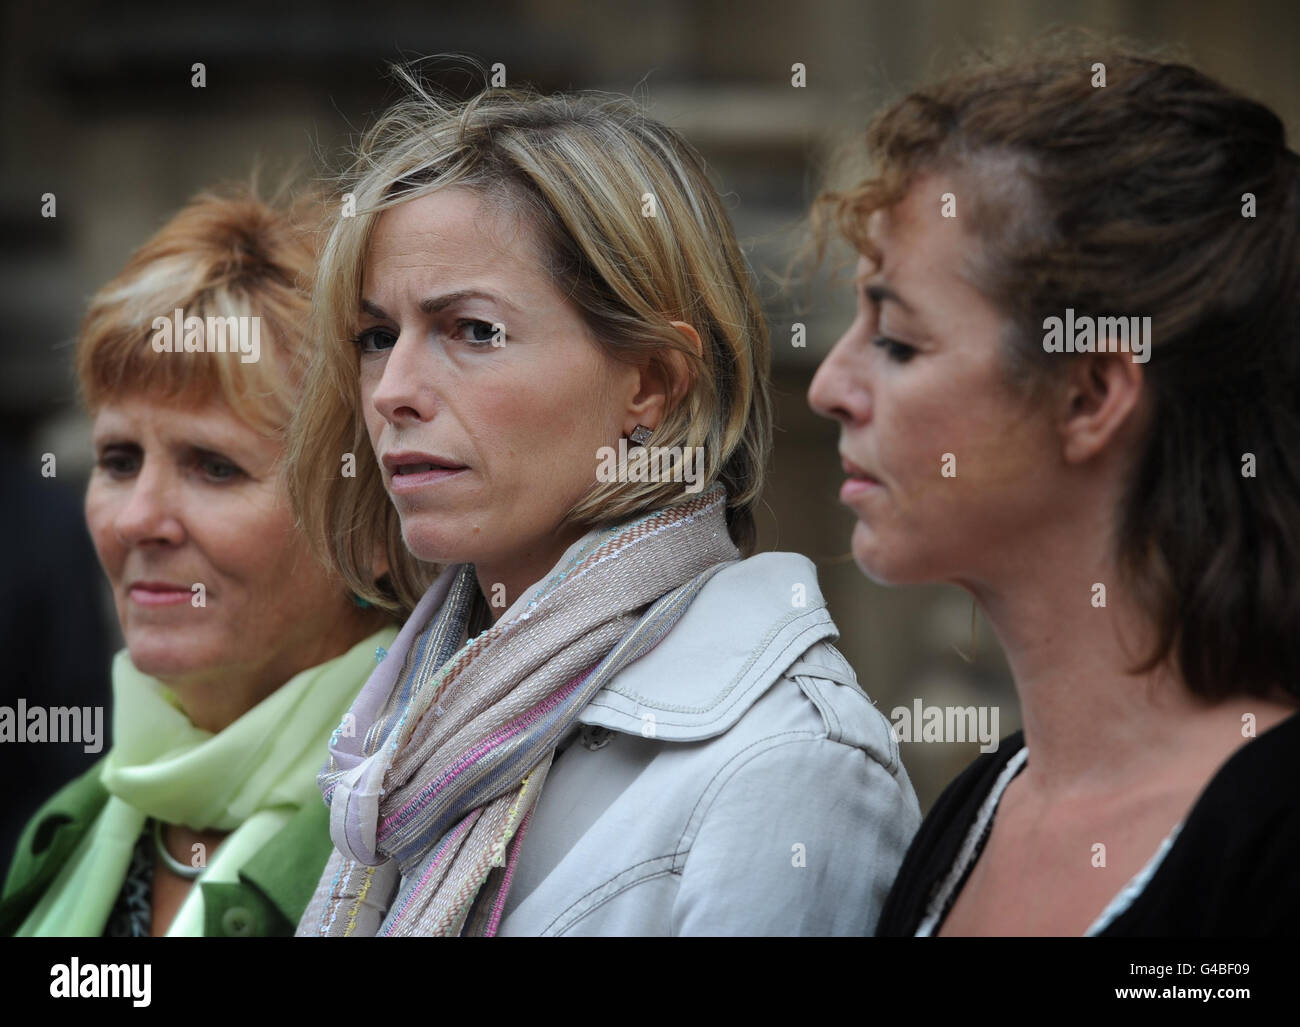 Kate McCann (Mitte), Mutter von Madeleine McCann, die 2007 in Portugal vermisst wurde, kommt zu einer parlamentarischen Untersuchung von Vermissten zusammen mit Nicki Durban (rechts), Mutter des Vermissten Luke Durbin und Sarah Godwin (links), Mutter des Vermissten Quentin Godwin, im Londoner Unterhaus. Stockfoto